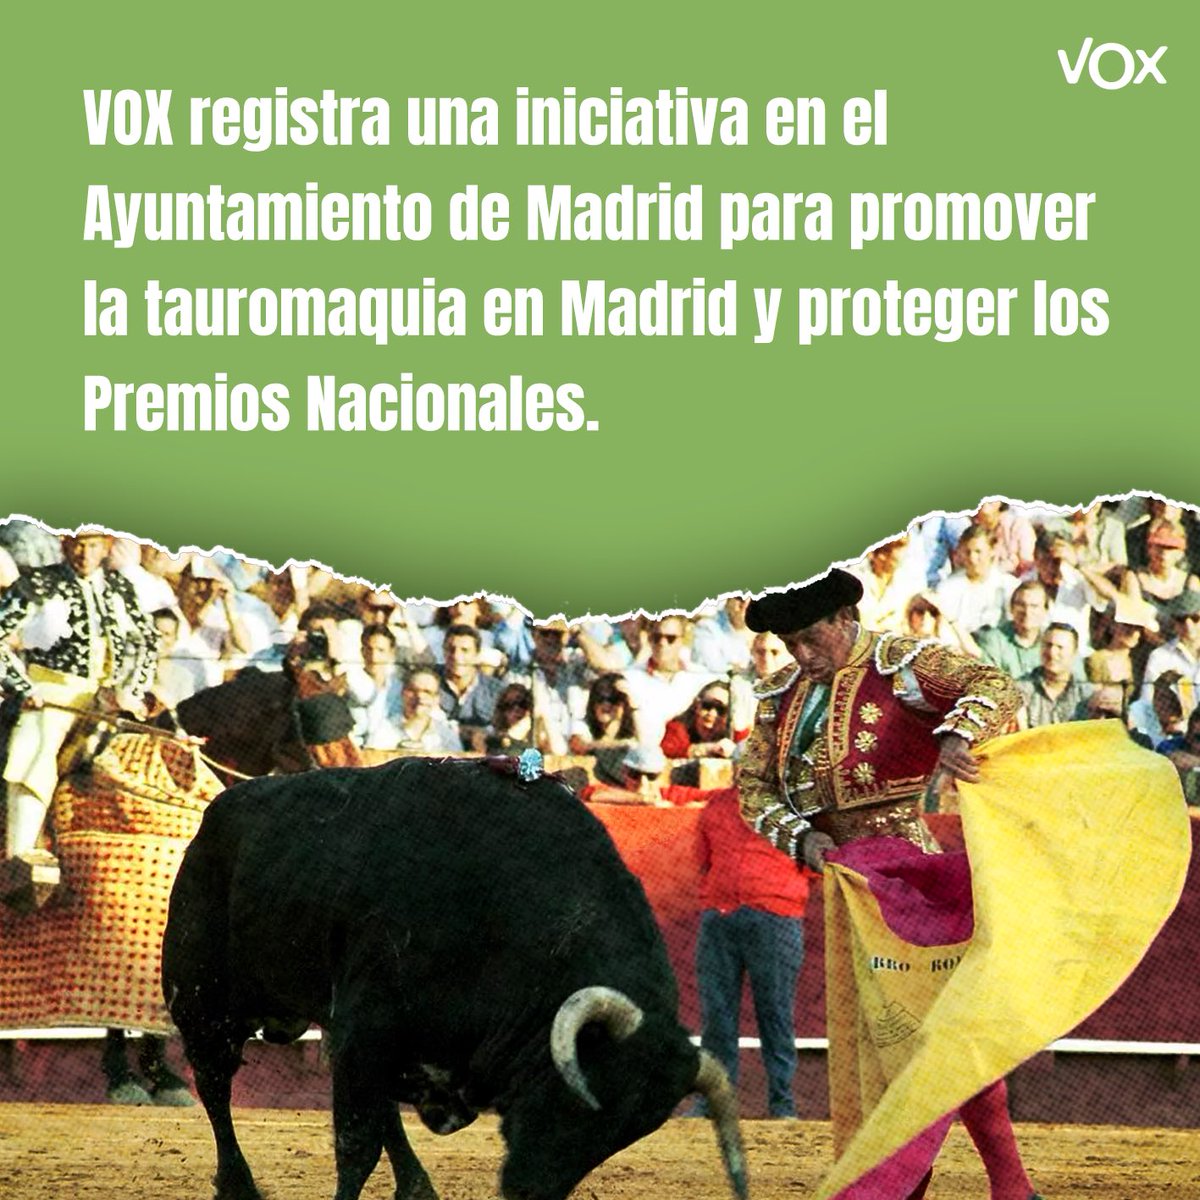 ‼️ #ÚLTIMAHORA VOX registra una iniciativa para promover la tauromaquia en Madrid y proteger los Premios Nacionales. ⬇️⬇️⬇️